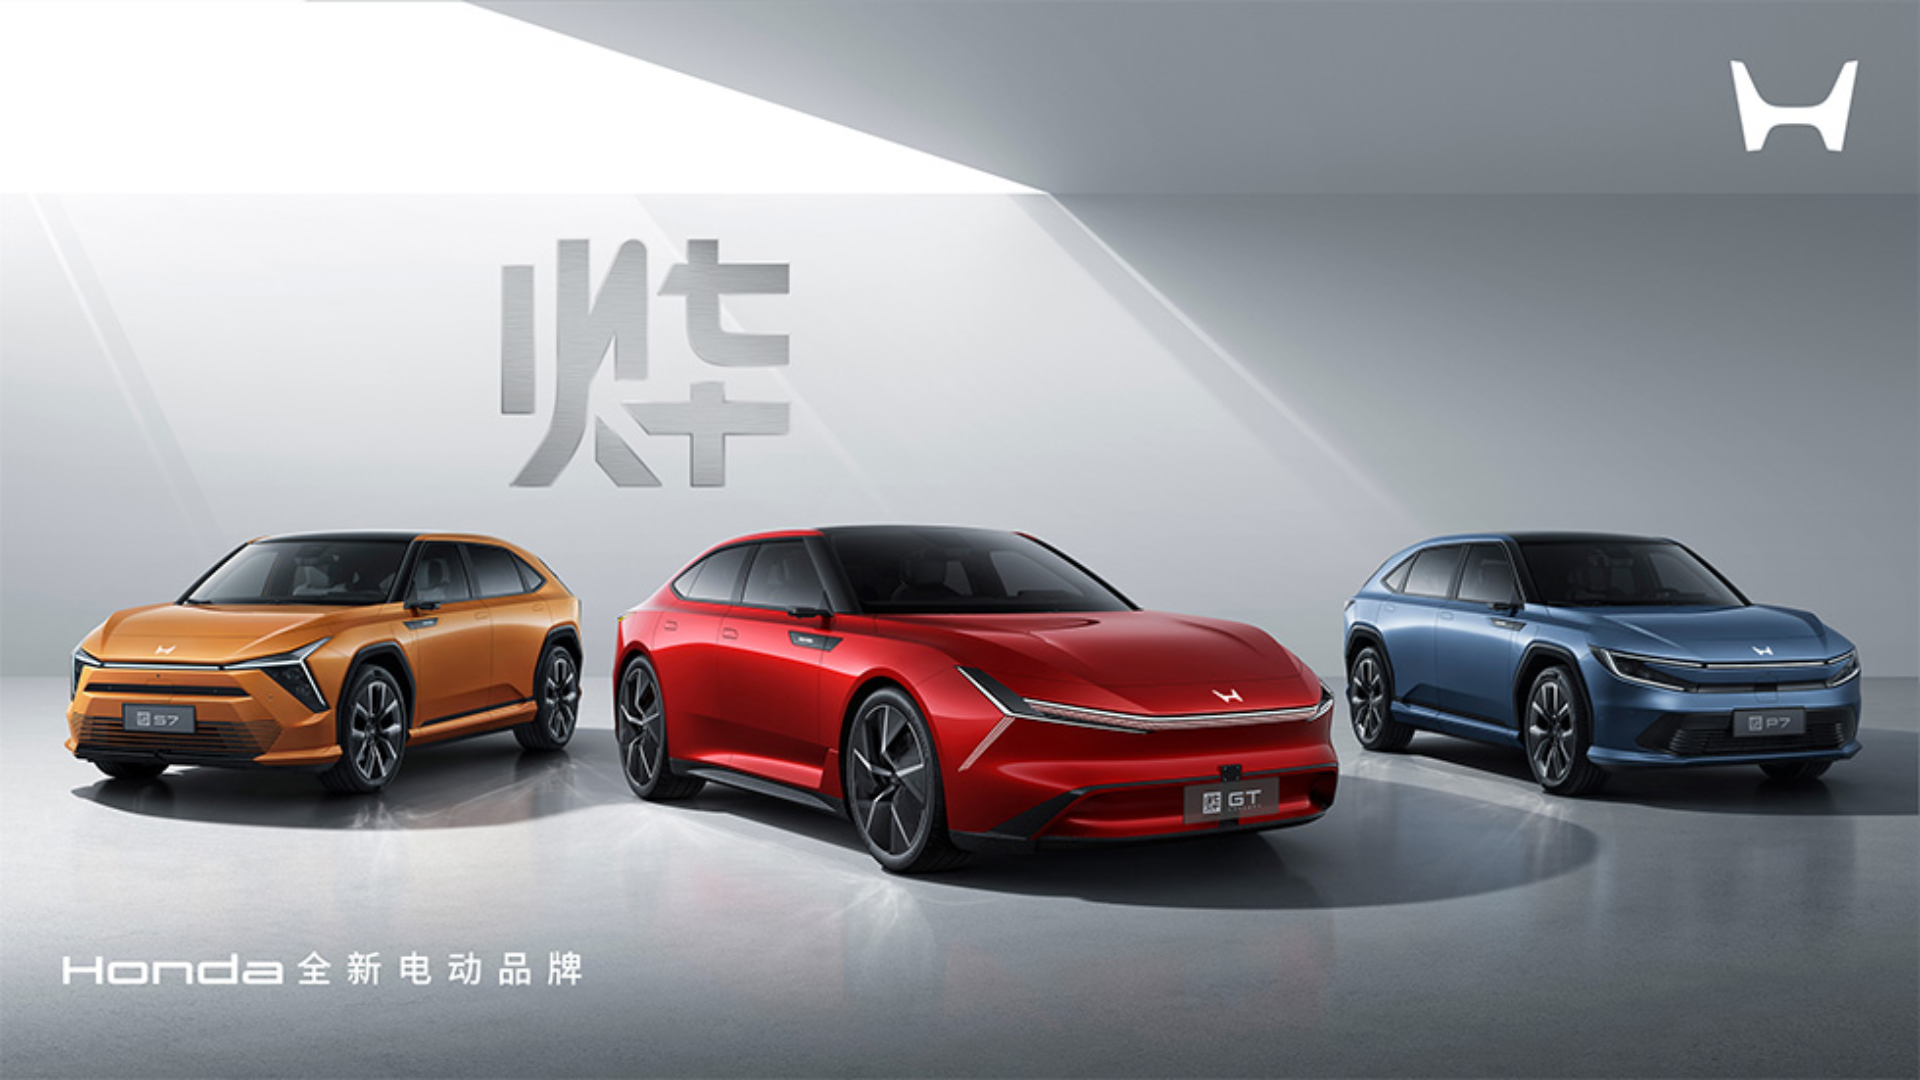 Honda lança marca elétrica no país de sucesso deles, a China